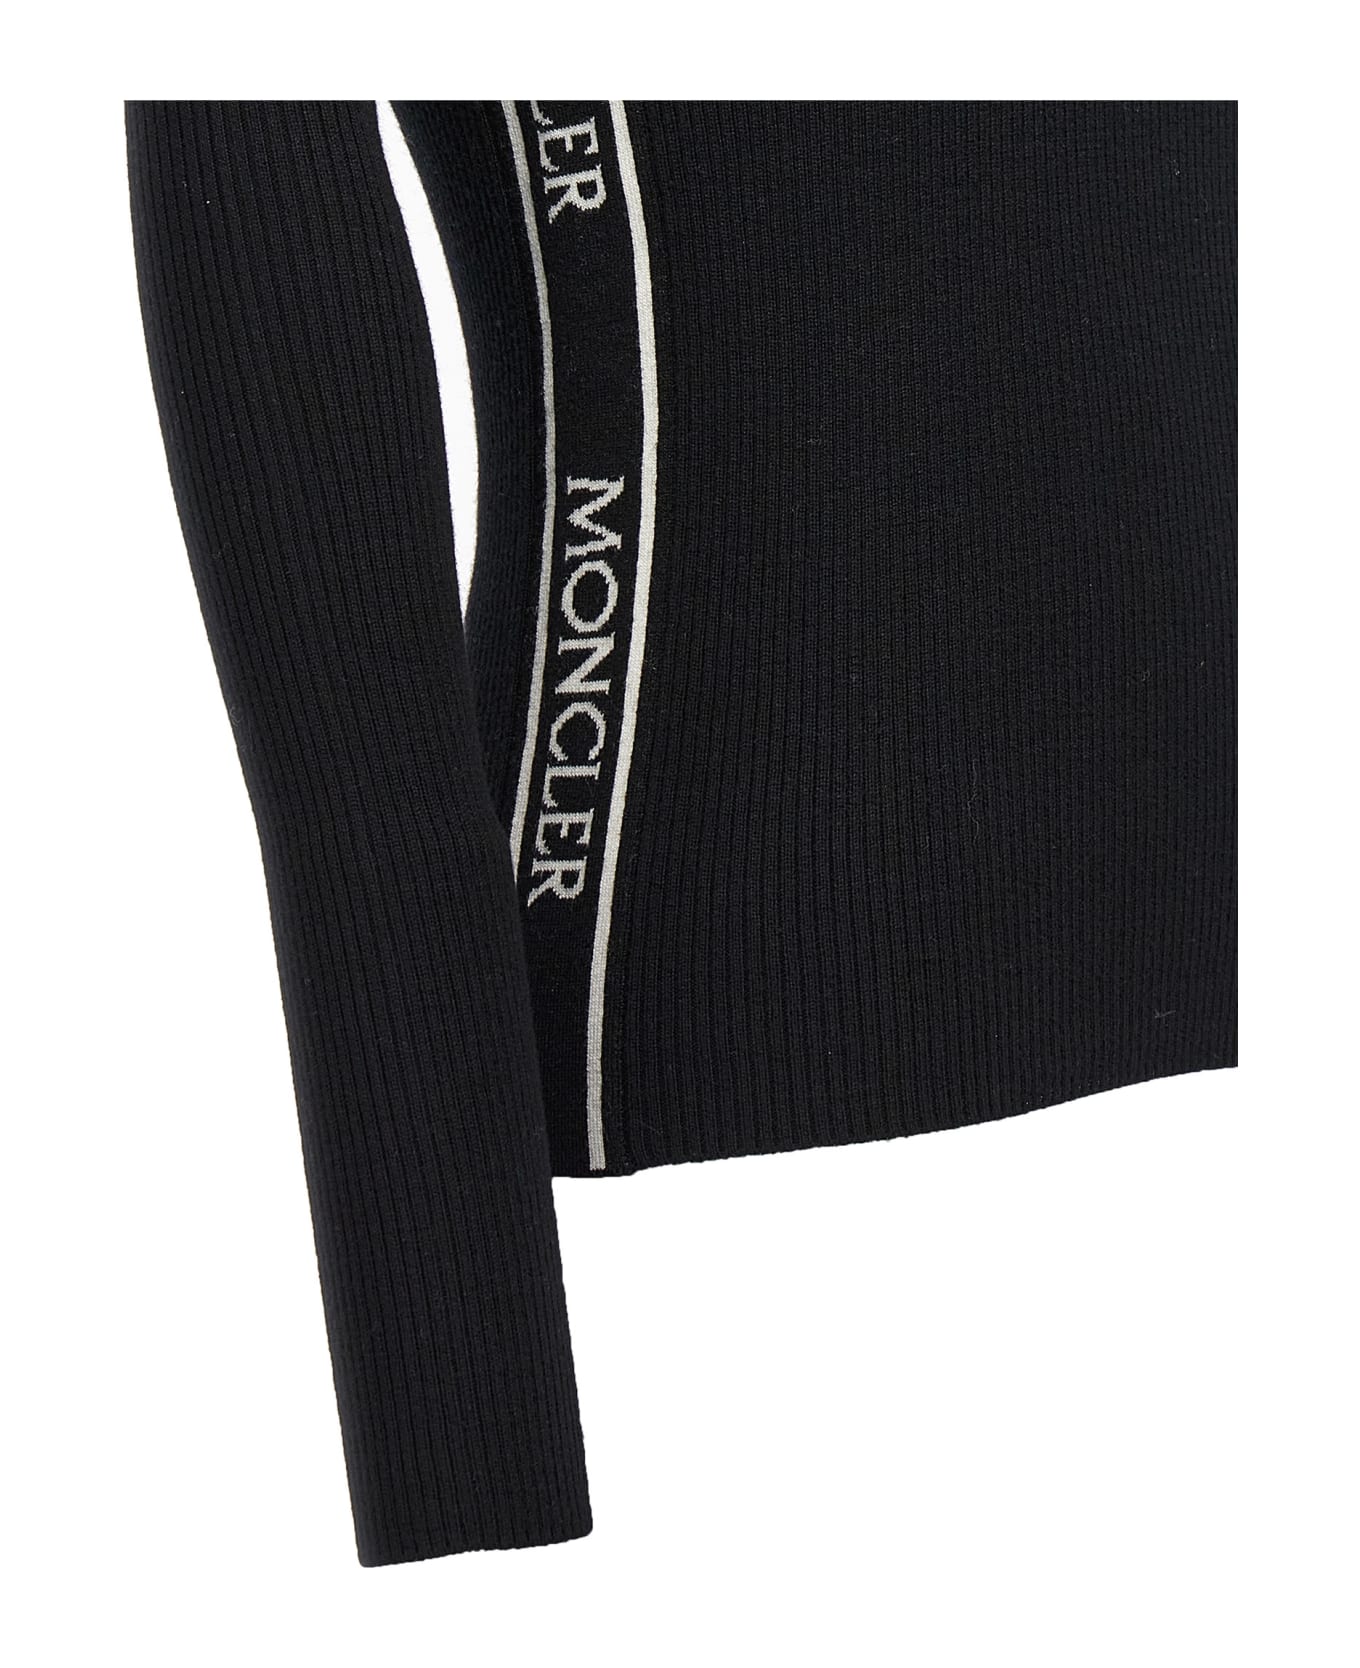 Moncler Black Wool Turtleneck With Zip - Black ニットウェア